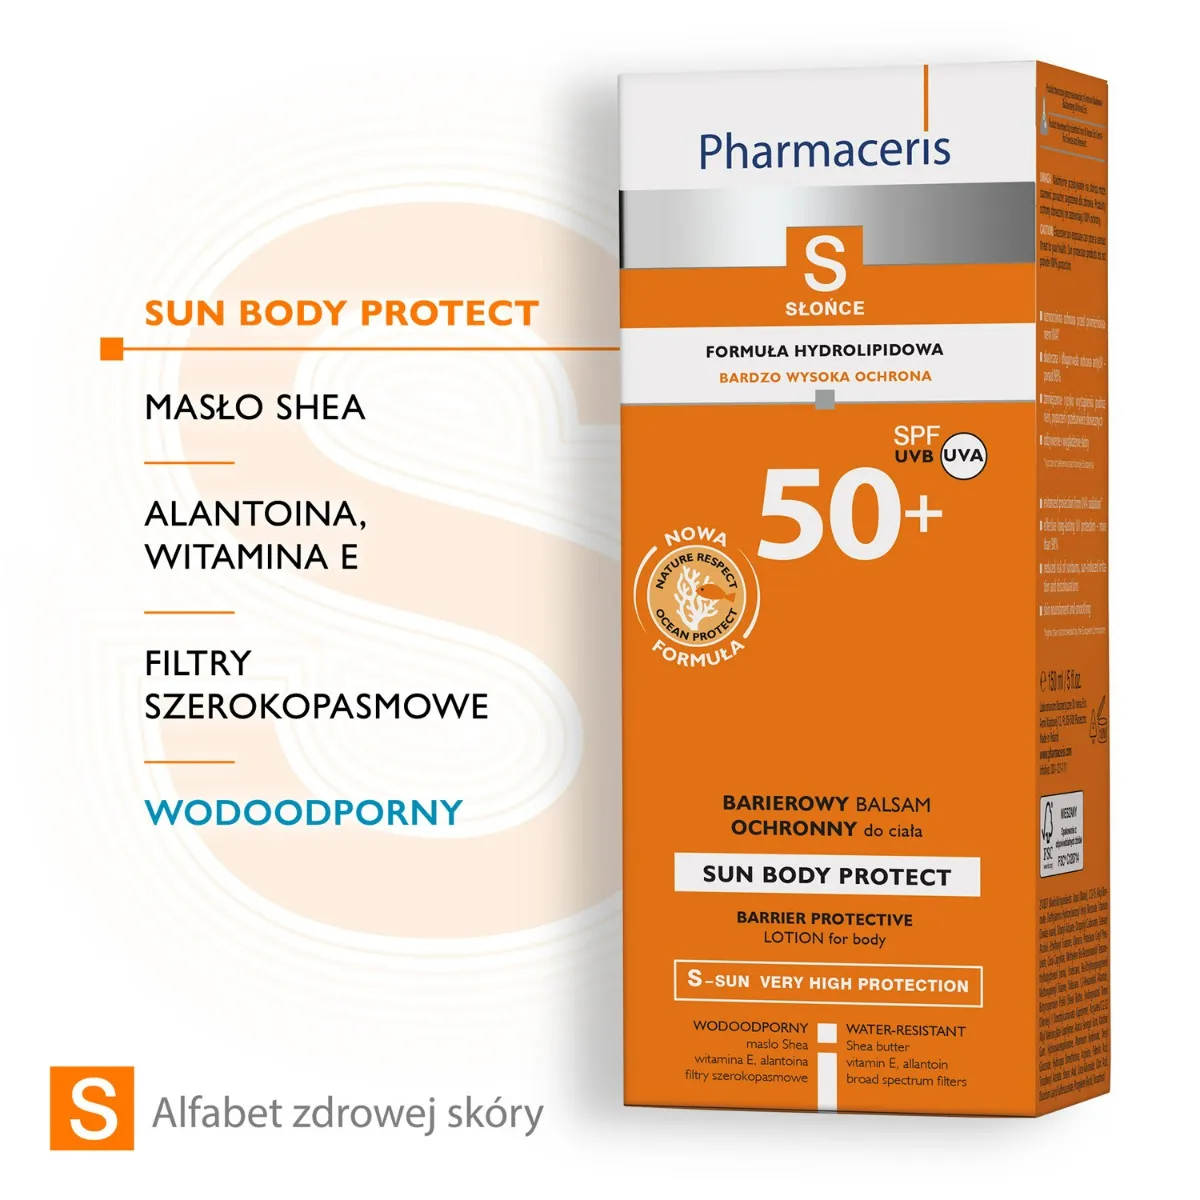 Pharmaceris S Słońce, hydrolipidowy ochronny balsam do ciała, SPF 50+ / 150 ml 